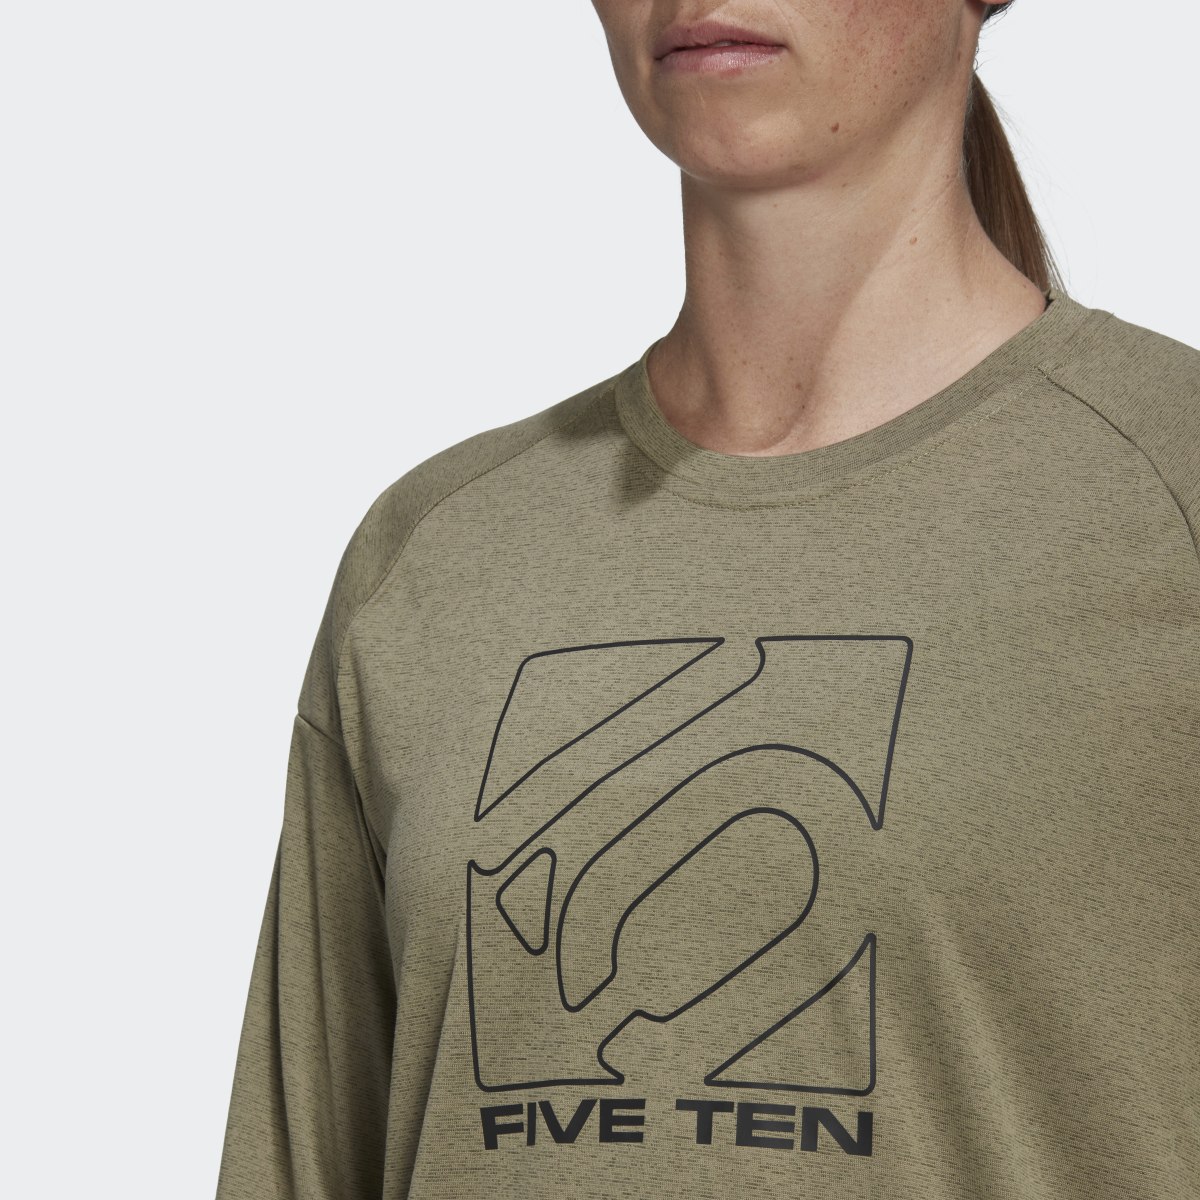 Adidas Five Ten Long Sleeve Jersey. 7